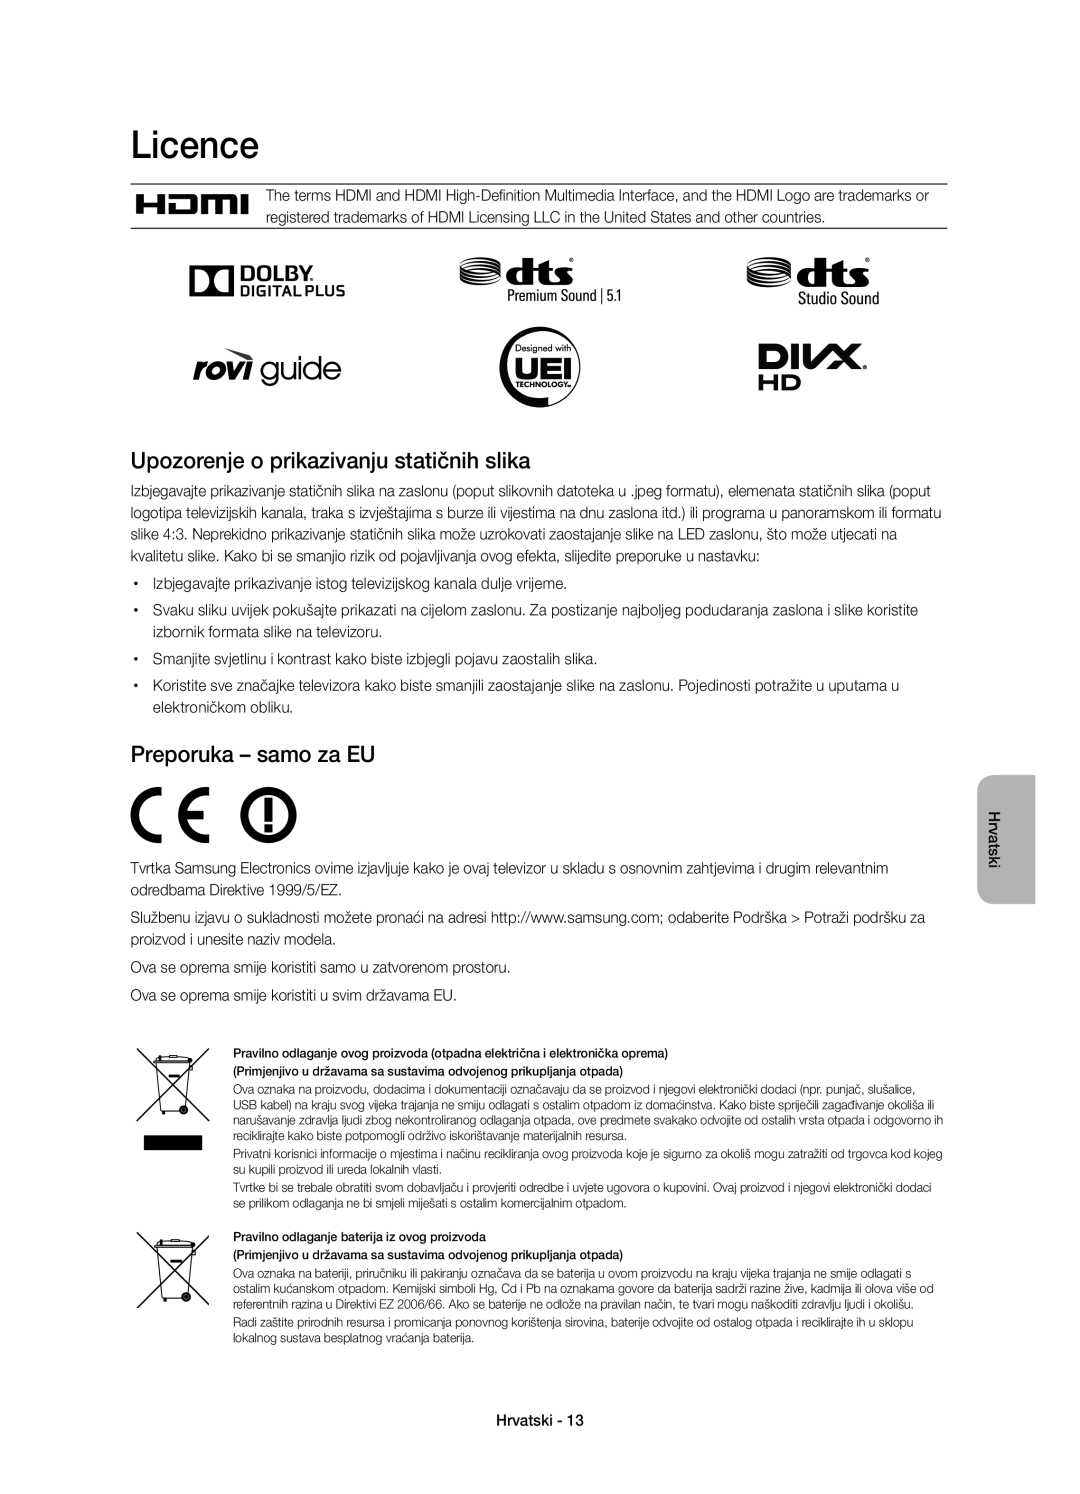 Samsung UE40H6700SLXXH manual Licence, Upozorenje o prikazivanju statičnih slika, Preporuka - samo za EU, Hrvatski 